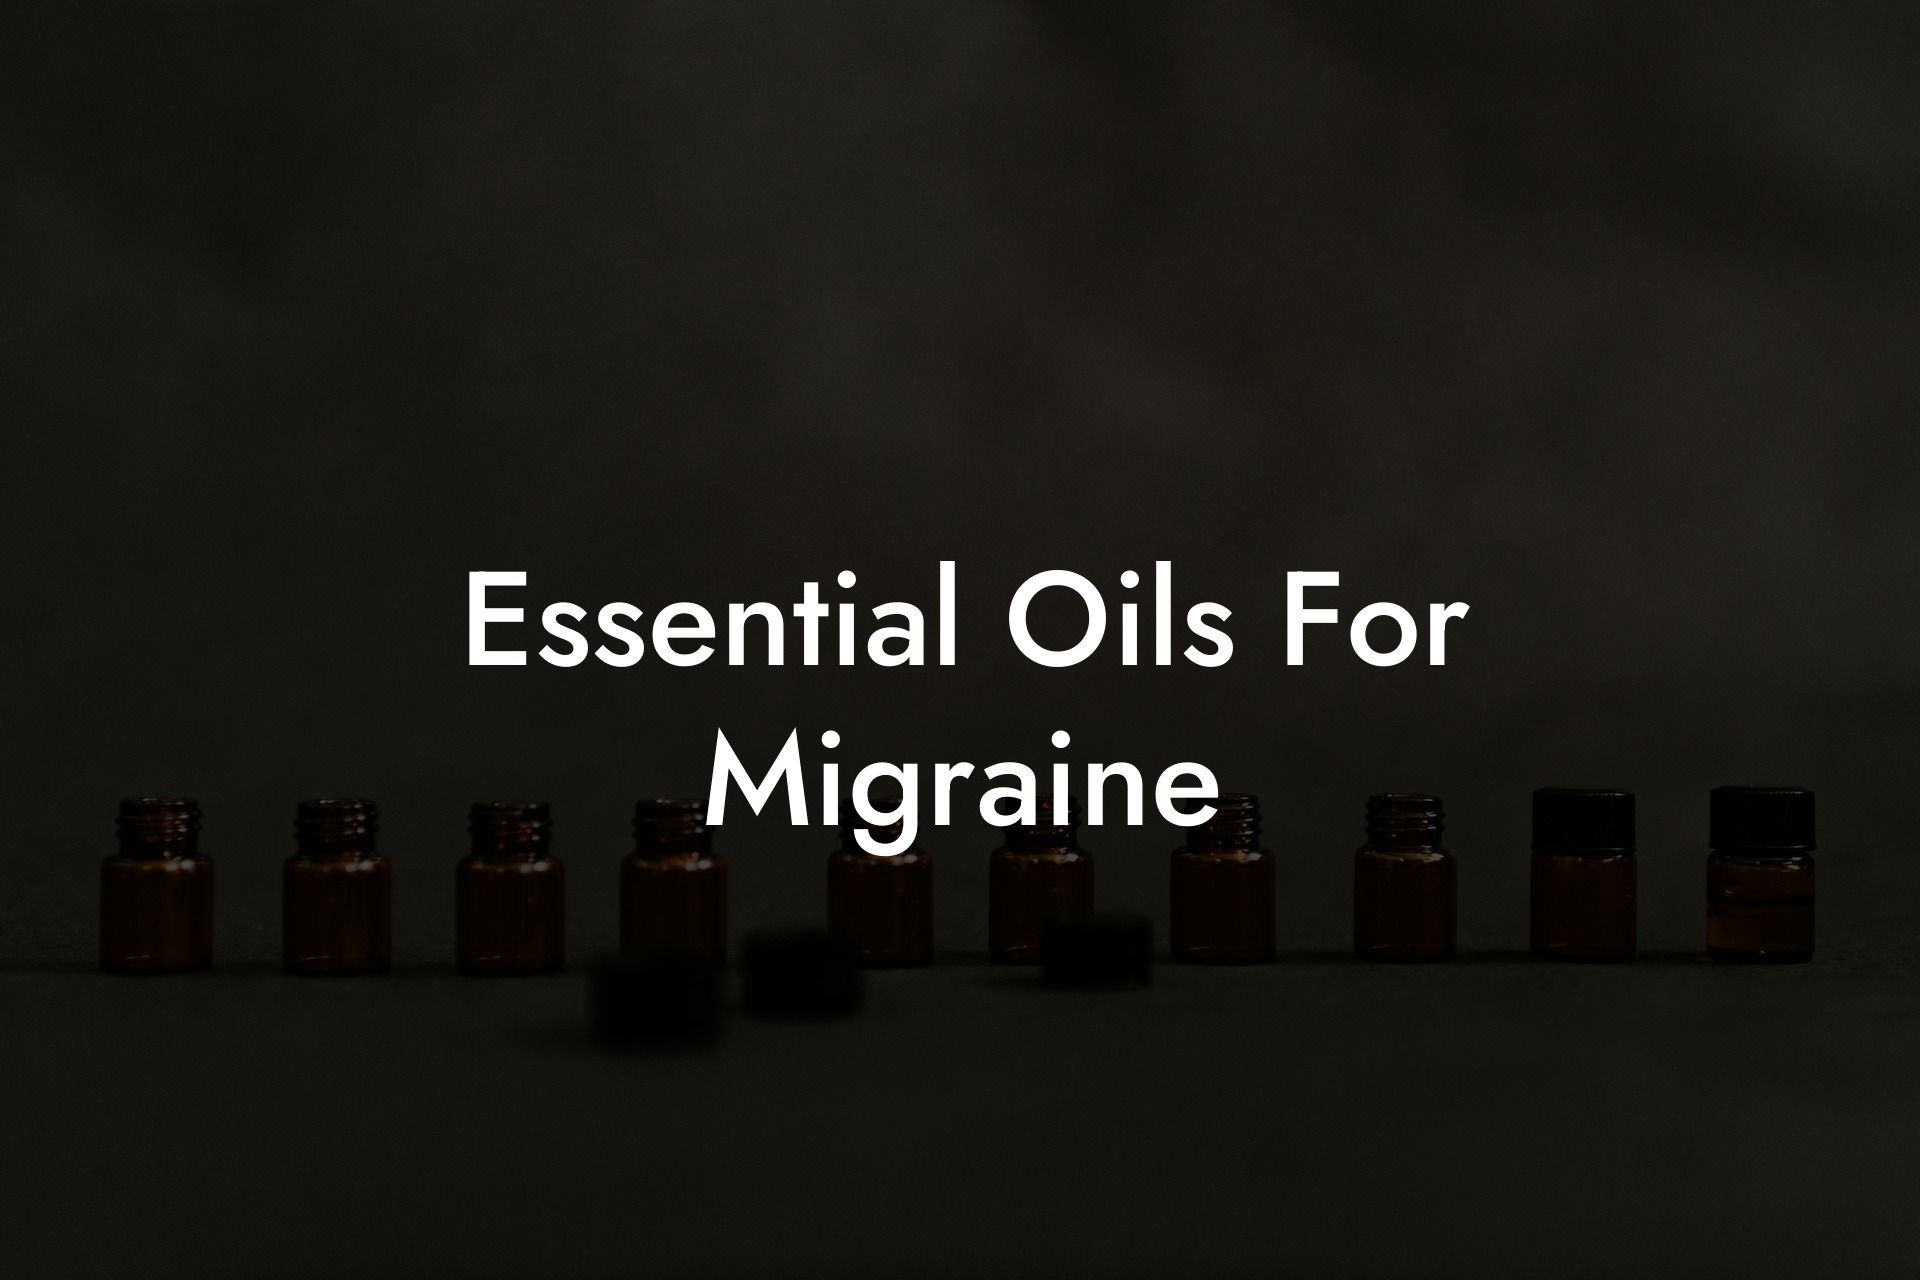 Essential Oils For Migraine